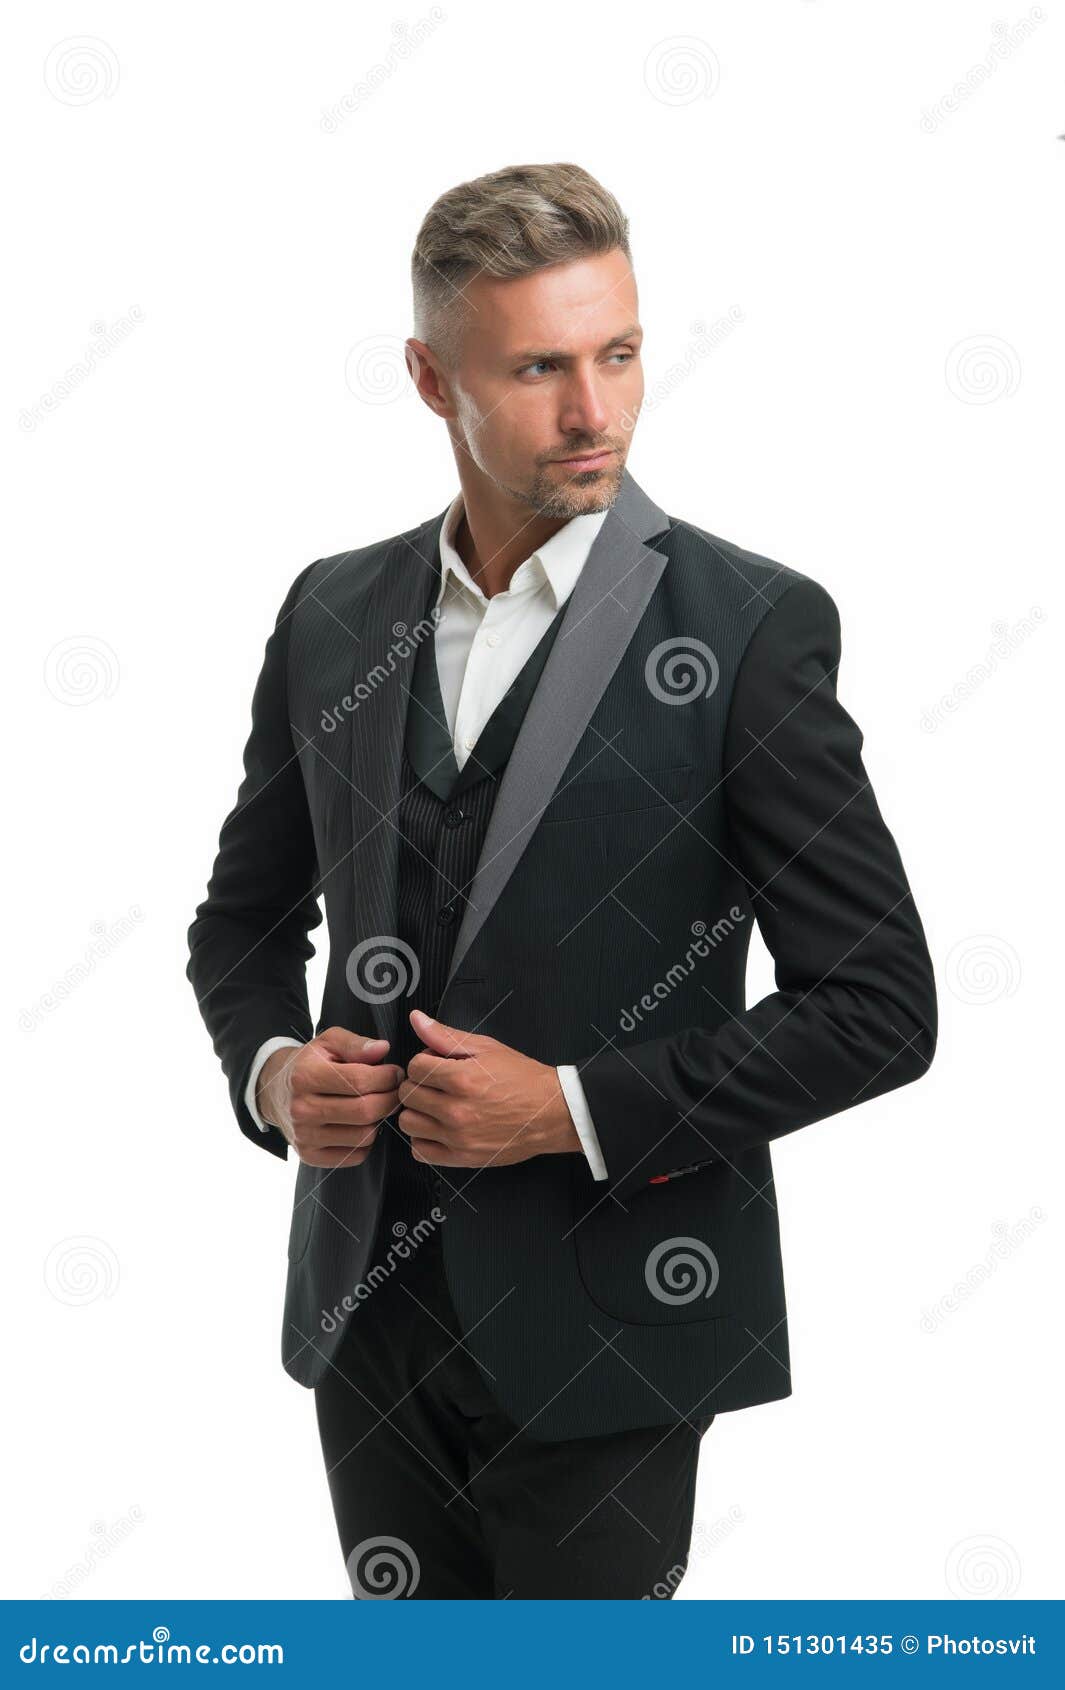 Man wearing tailored suit